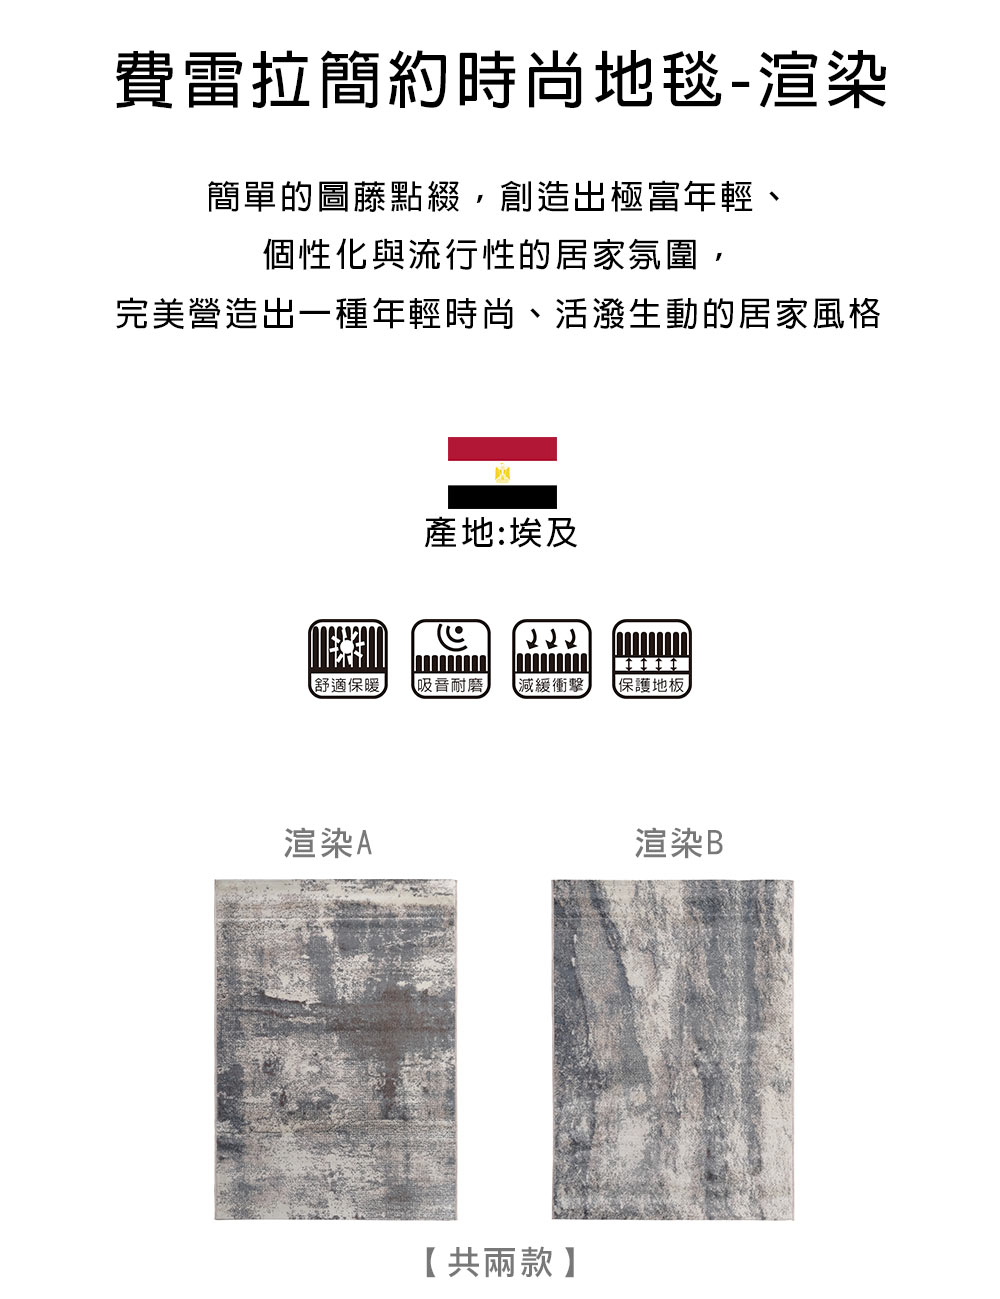 范登伯格 費雷拉簡約時尚地毯-渲染(133x190cm/共兩